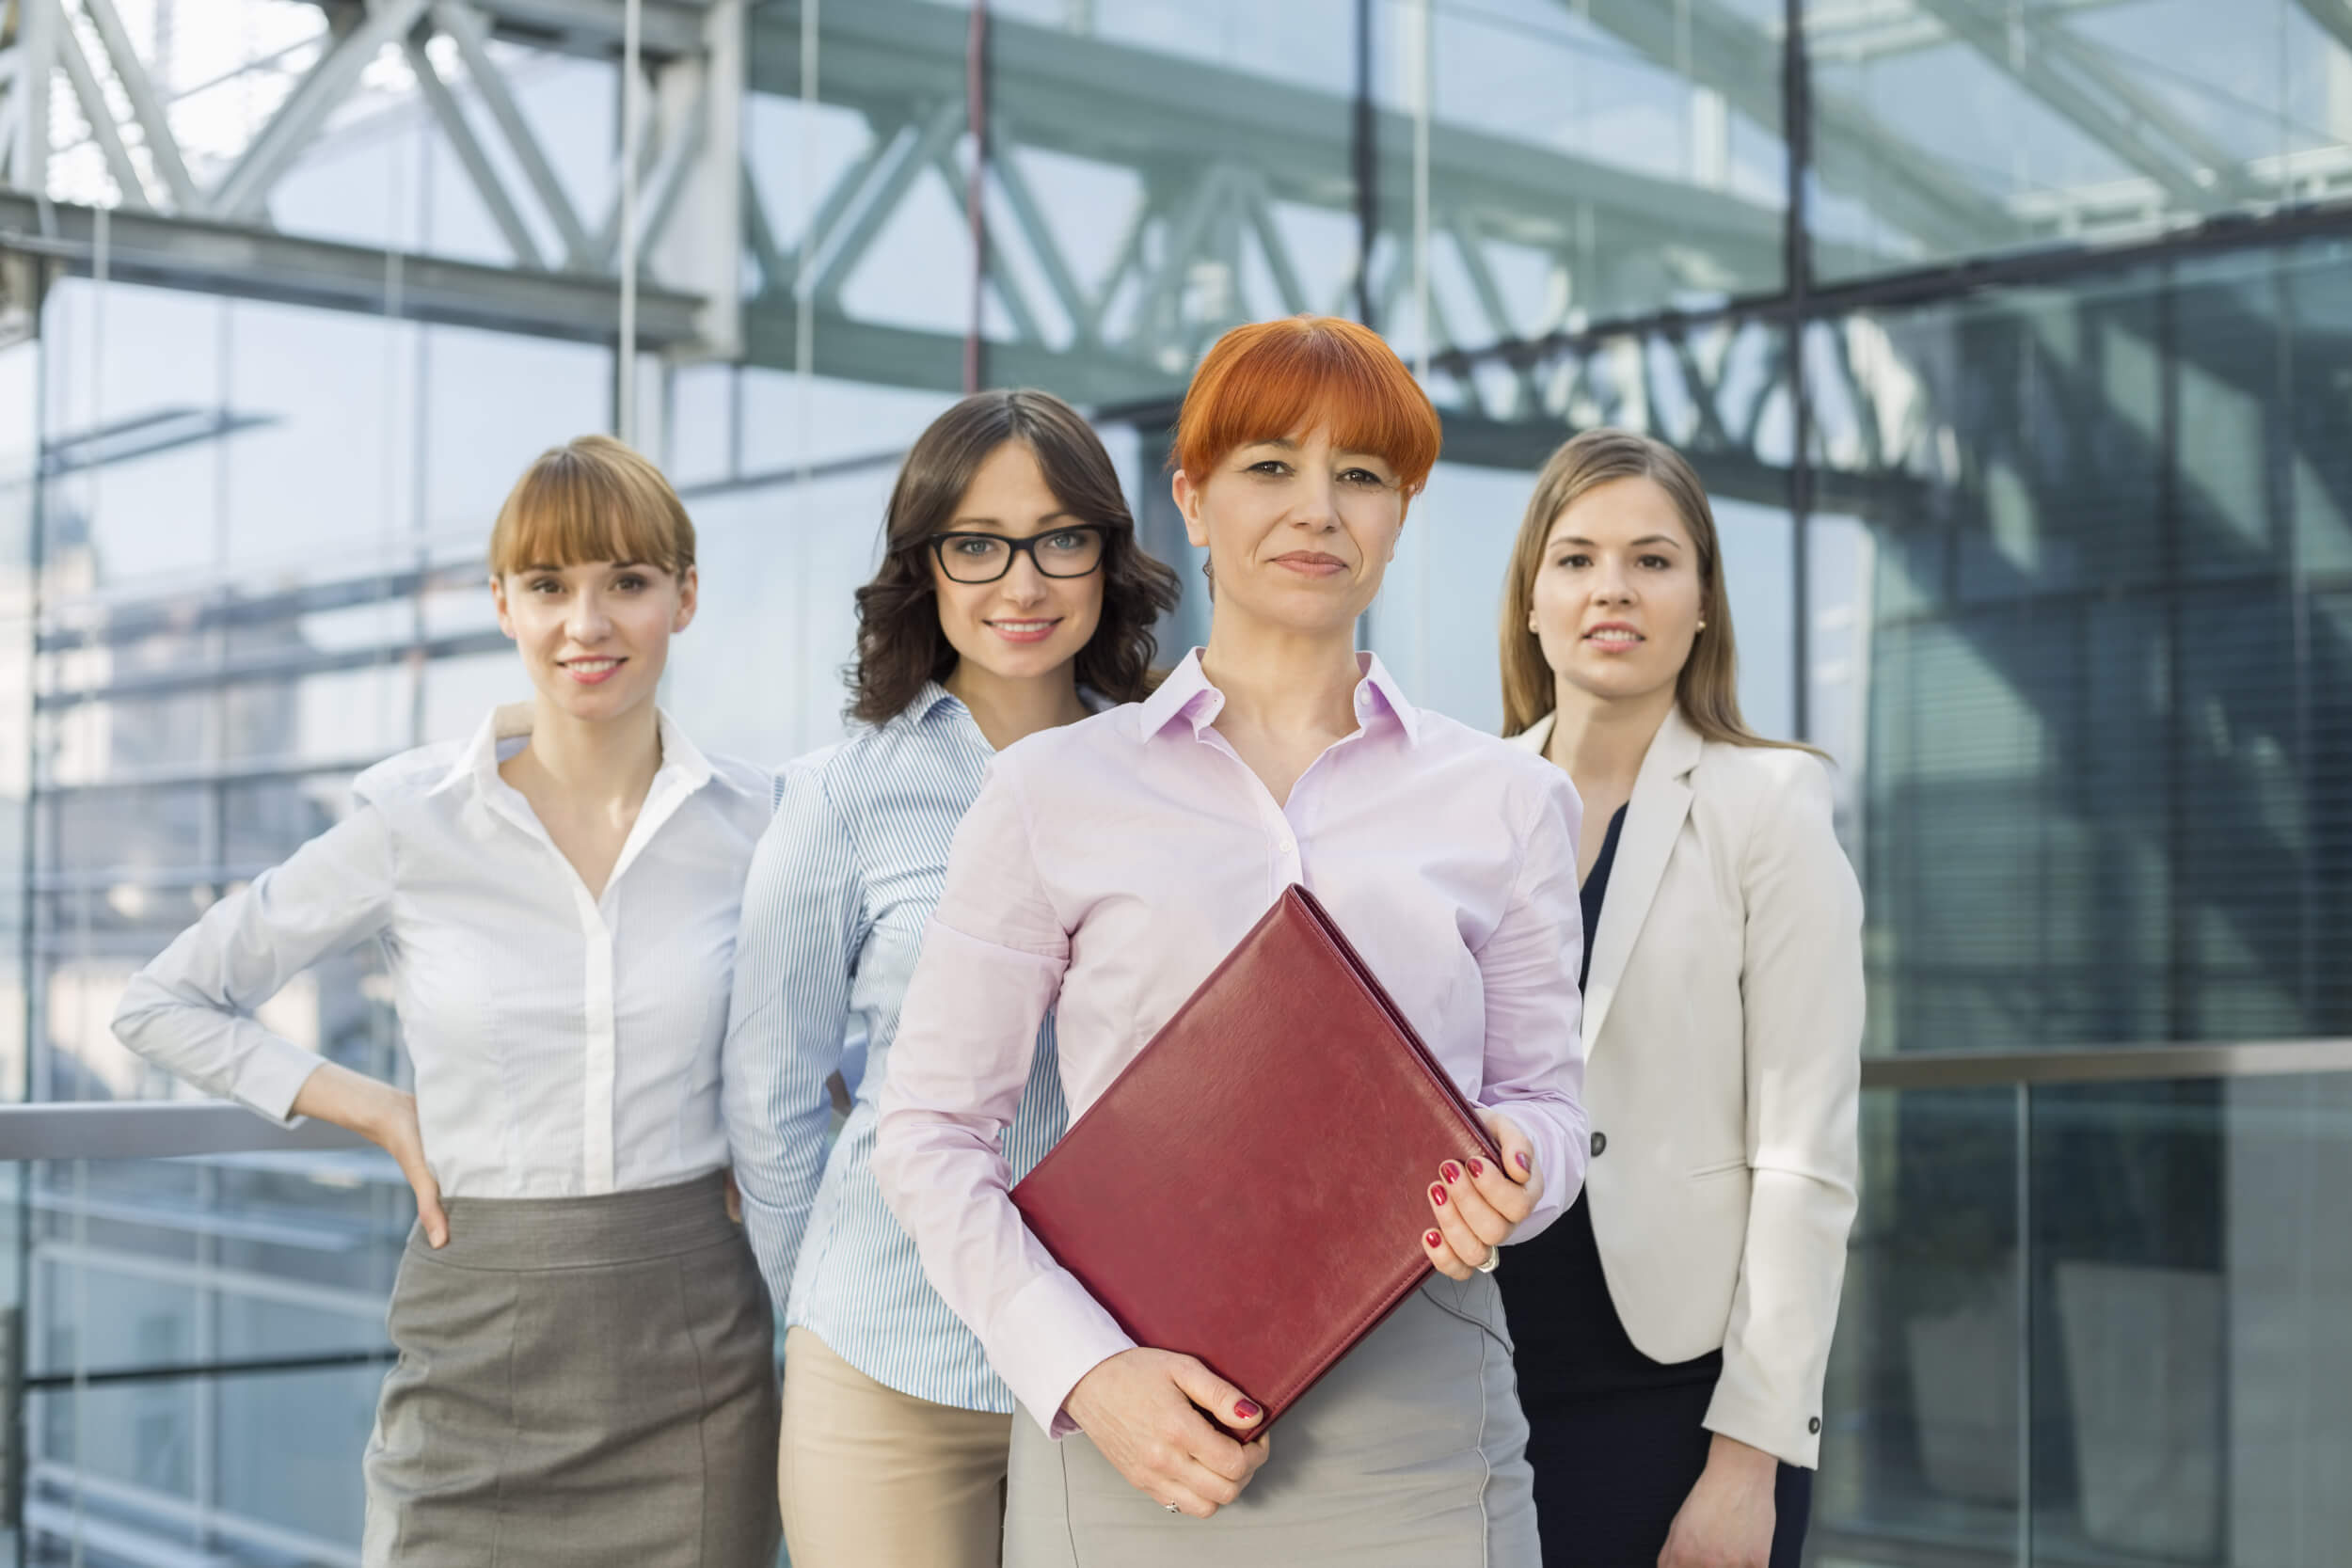 Frauen im Vertrieb - Mit Kommunikations- und Verhandlungsgeschick erfolgreich verkaufen - search & train